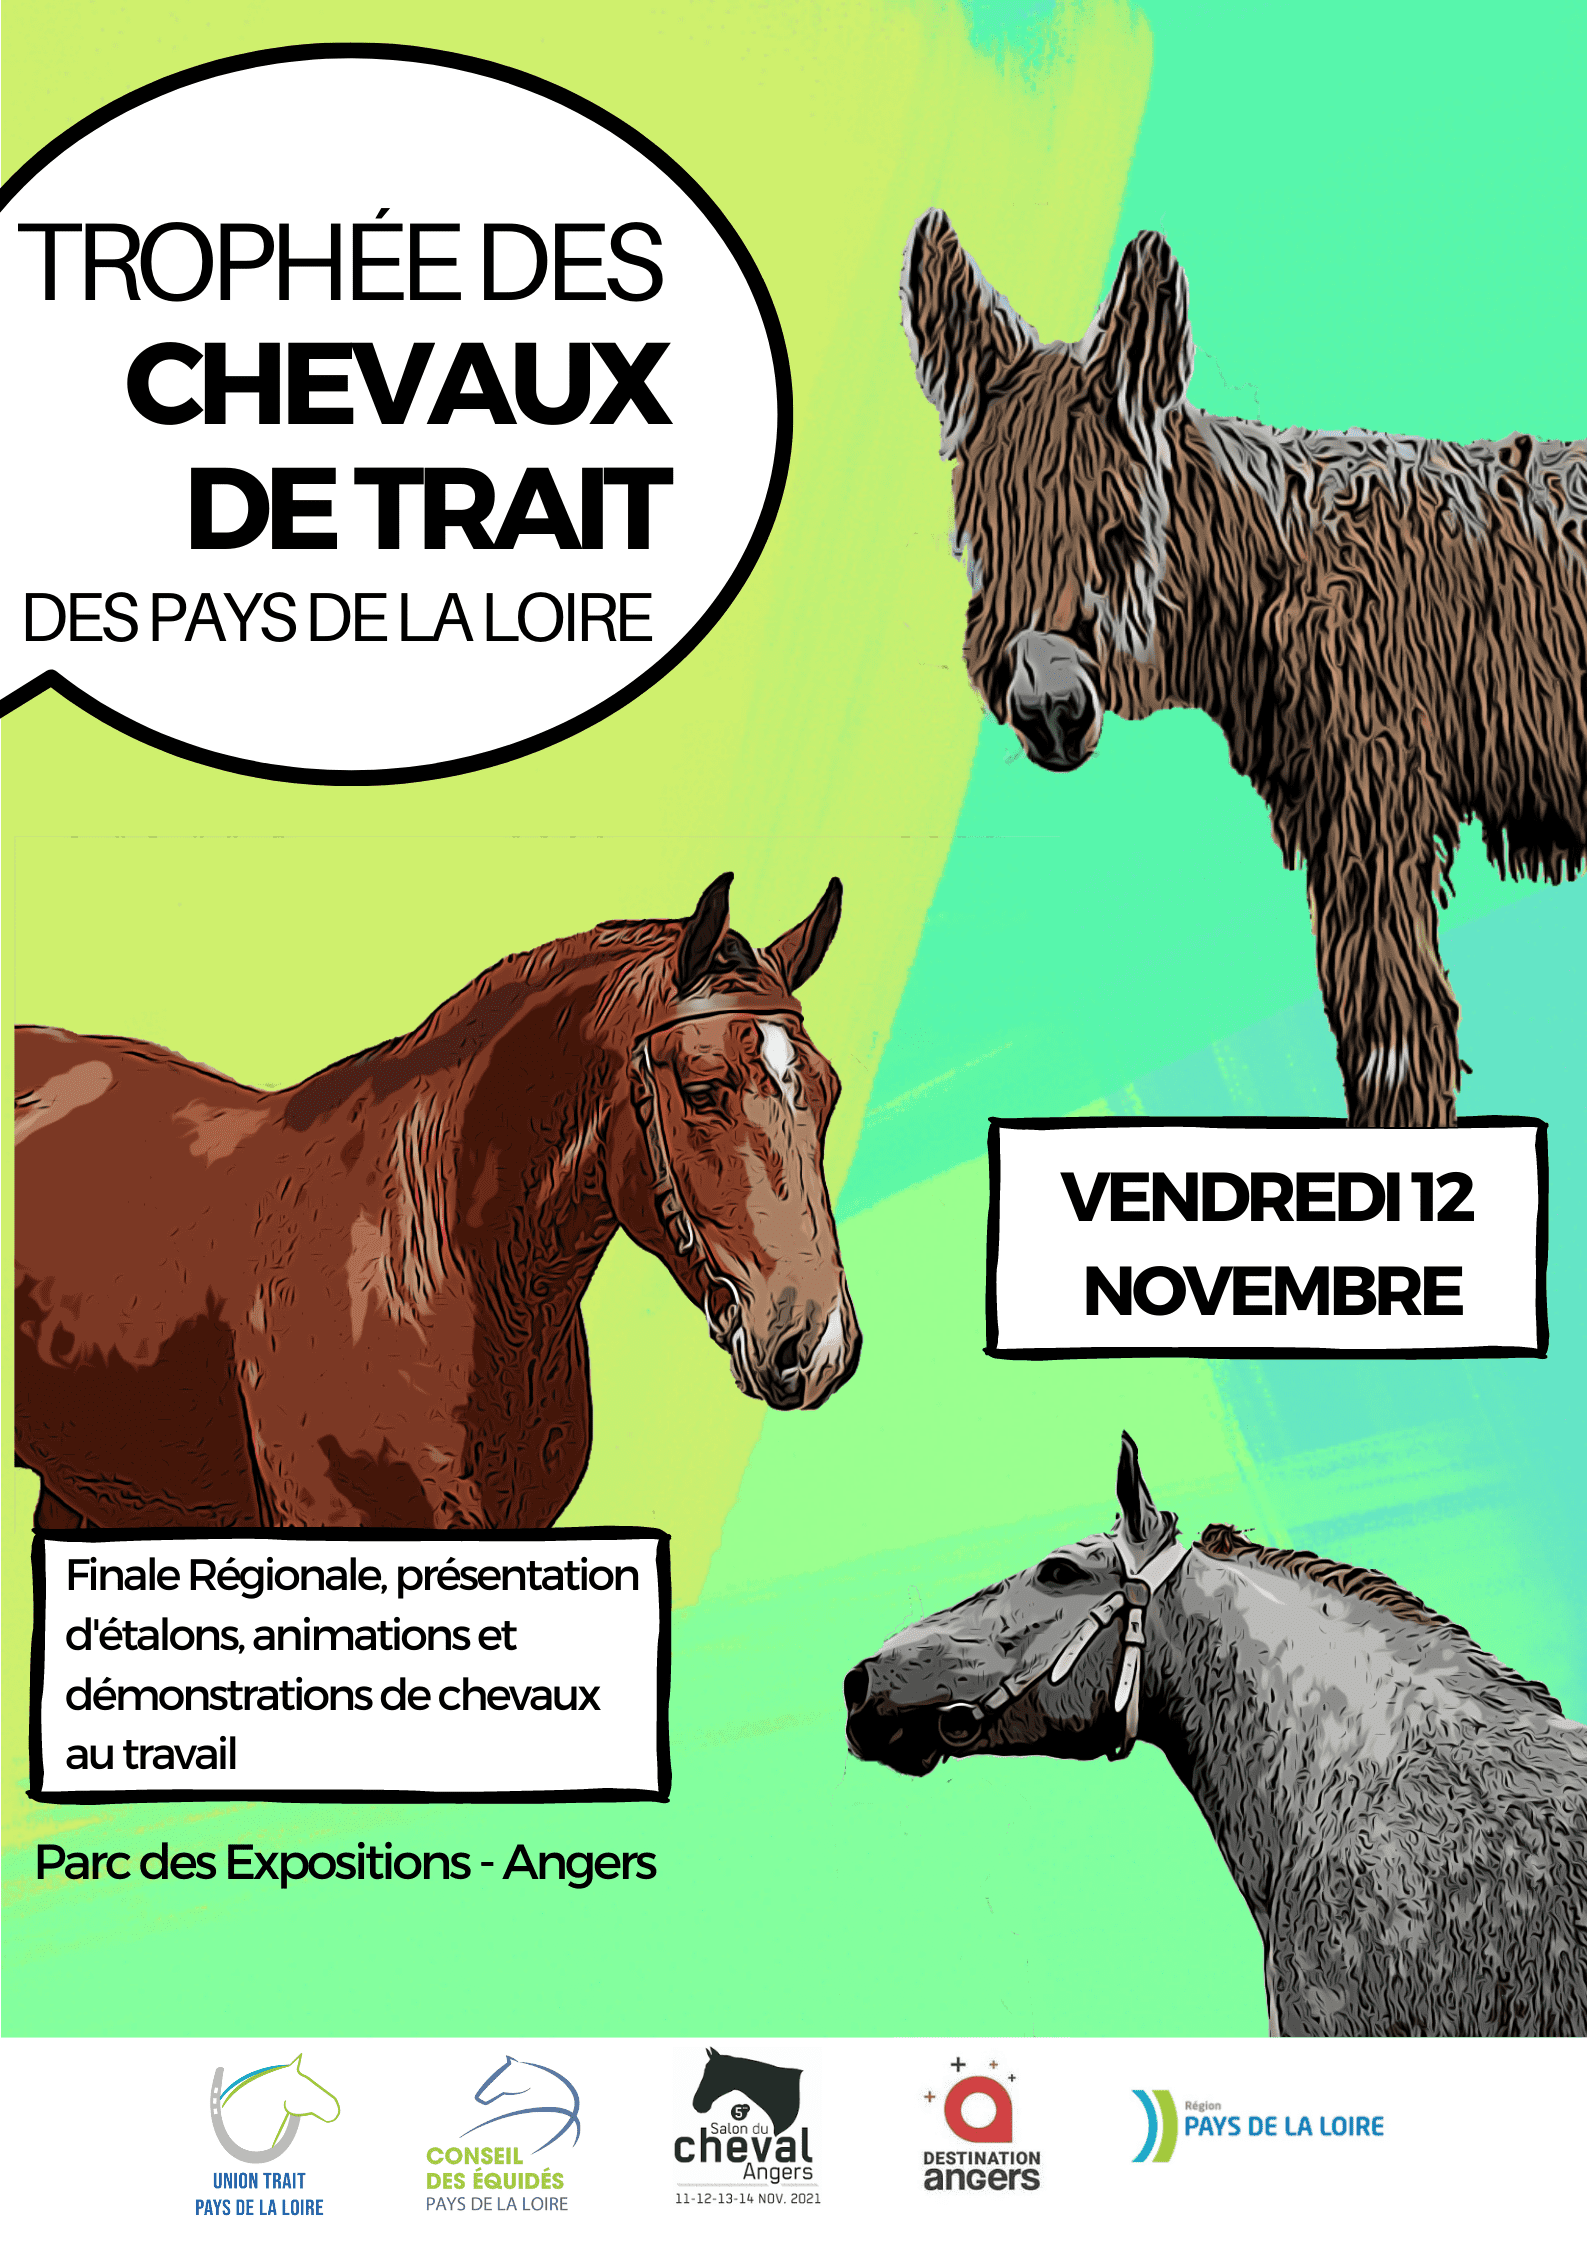 Les meilleurs chevaux de trait ligériens à l’honneur au Salon du Cheval !